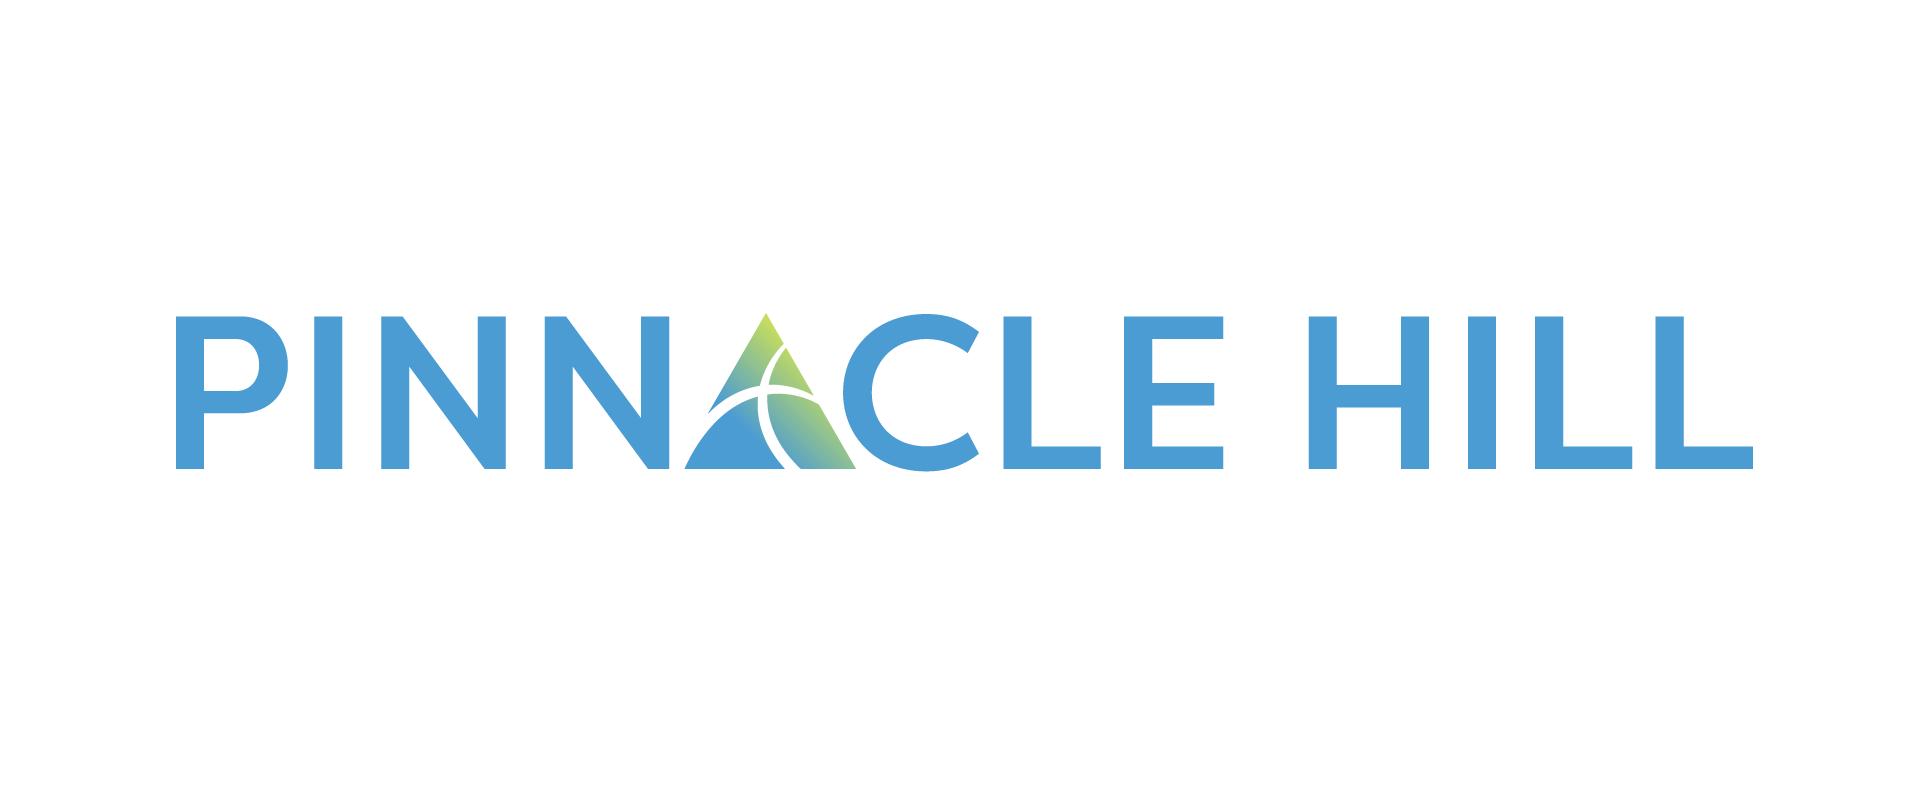 Pinnacle Hill logo